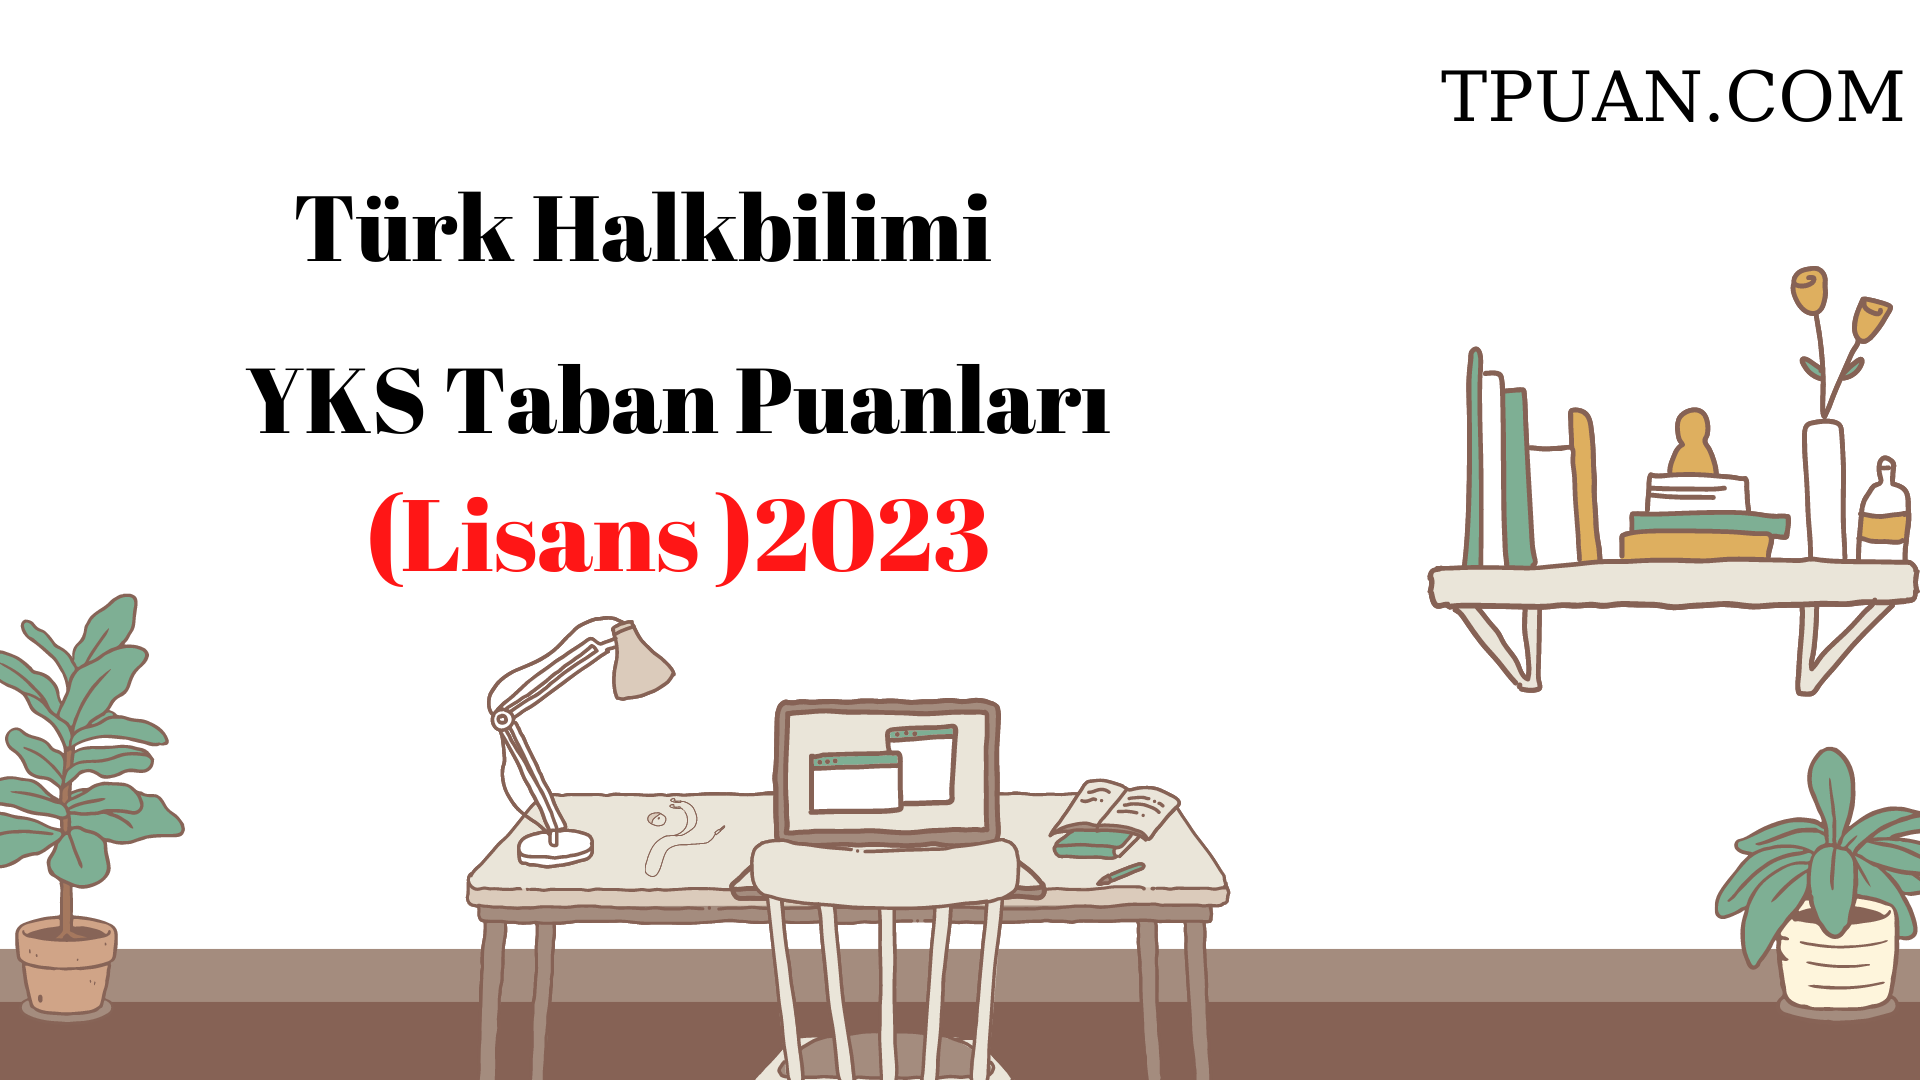  Türk Halkbilimi Bölümü YKS Taban Puanları (4 Yıllık) 2023